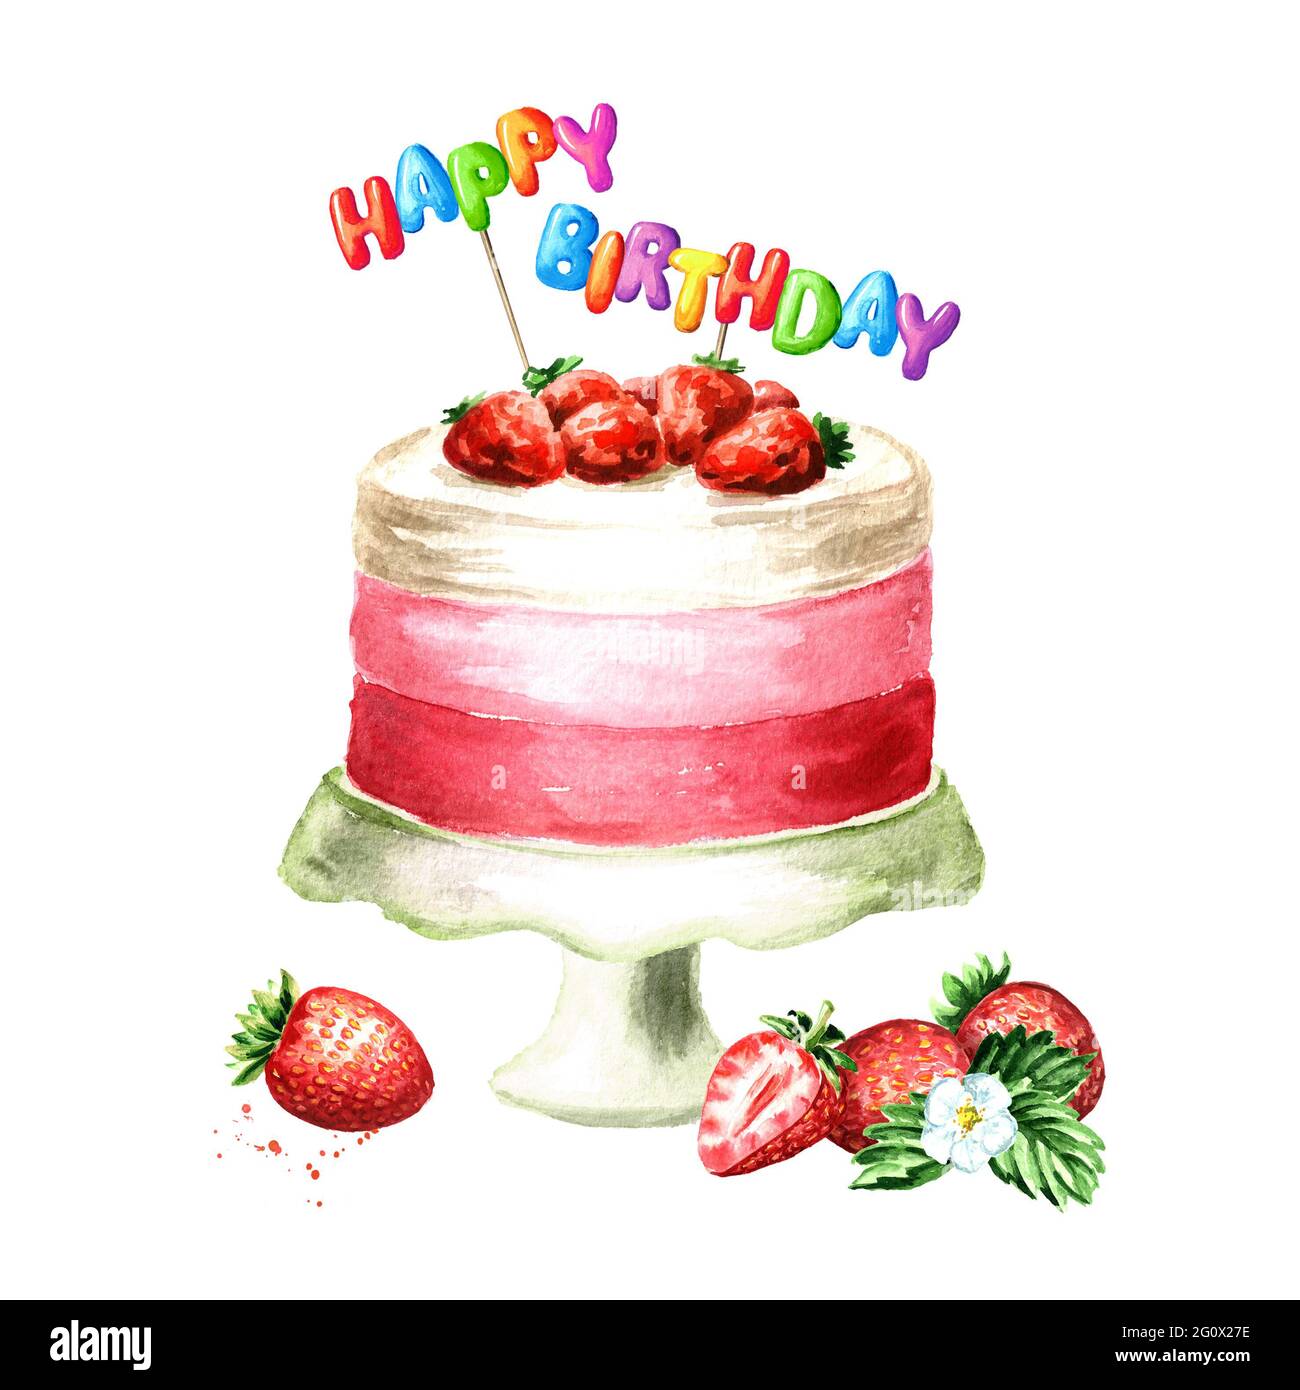 Torta con la scritta Happy Birthday su un bastone. Immagine disegnata a  mano con acquerello isolata su sfondo bianco Foto stock - Alamy